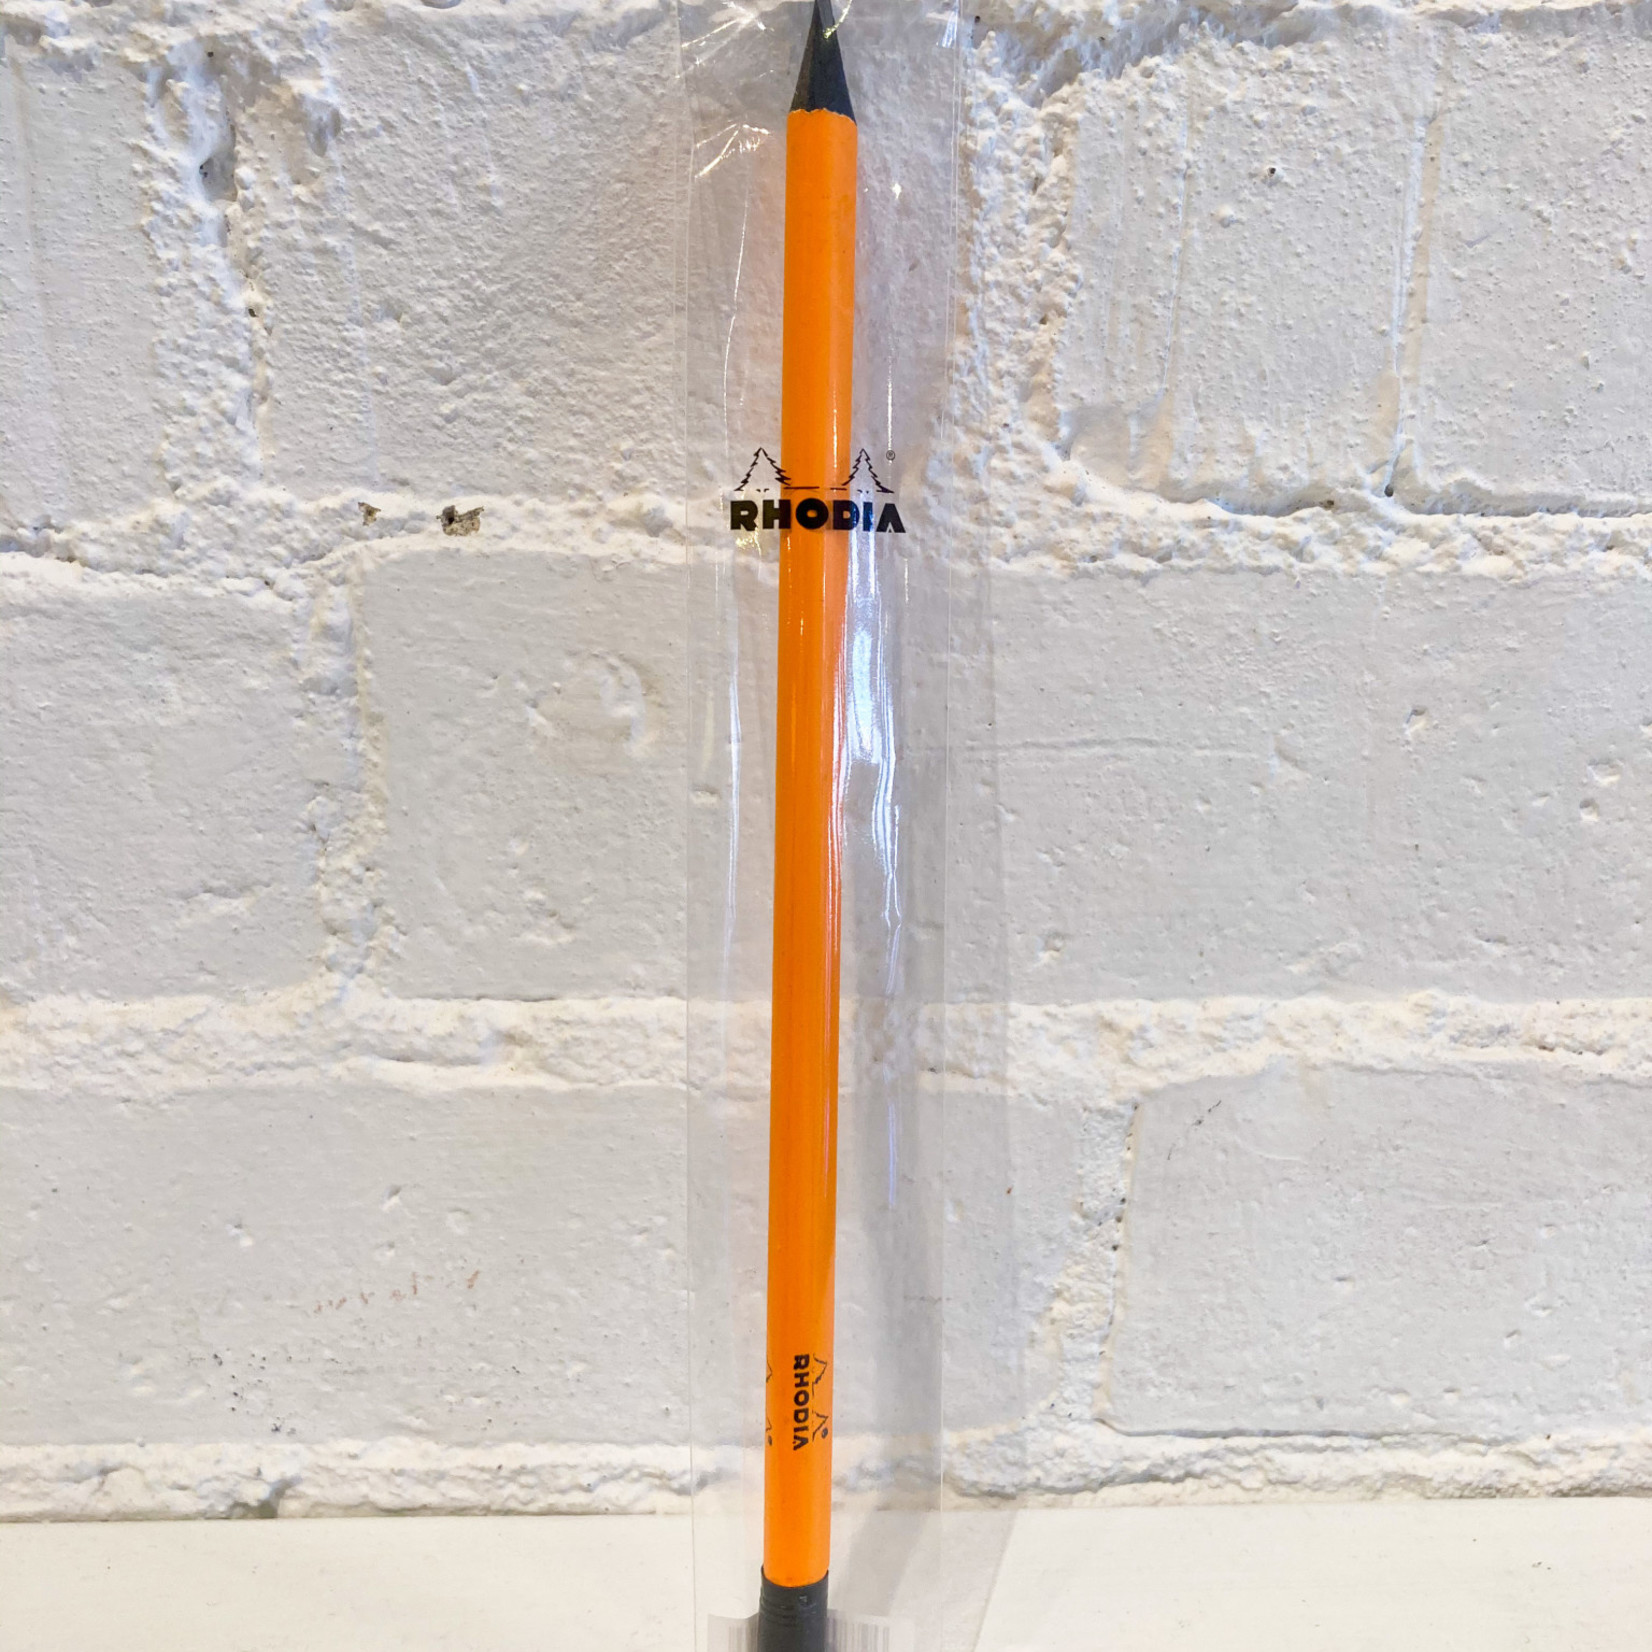 Rhodia Pencil Orange